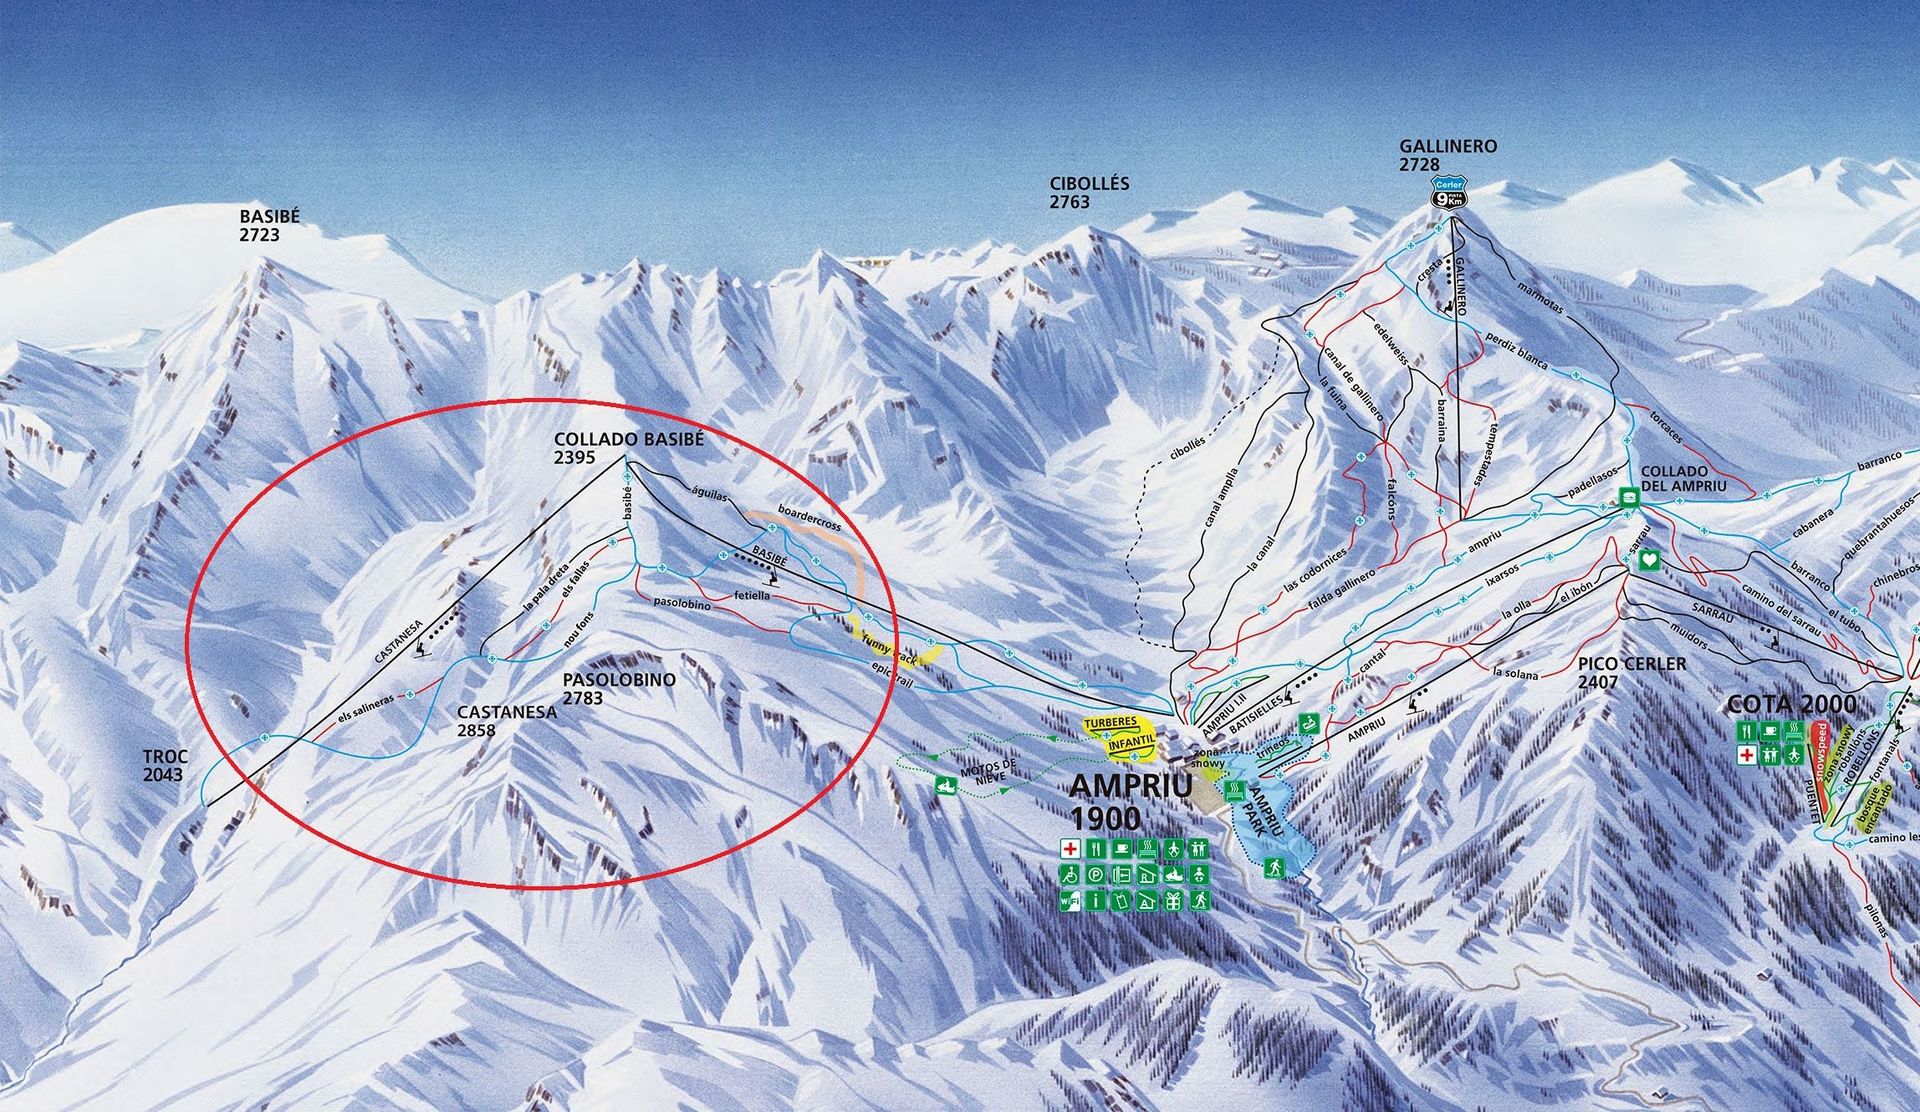 Cerler aumenta su area esquiable hasta los 80 kilómetros de pistas - Noticias - Nevasport.com